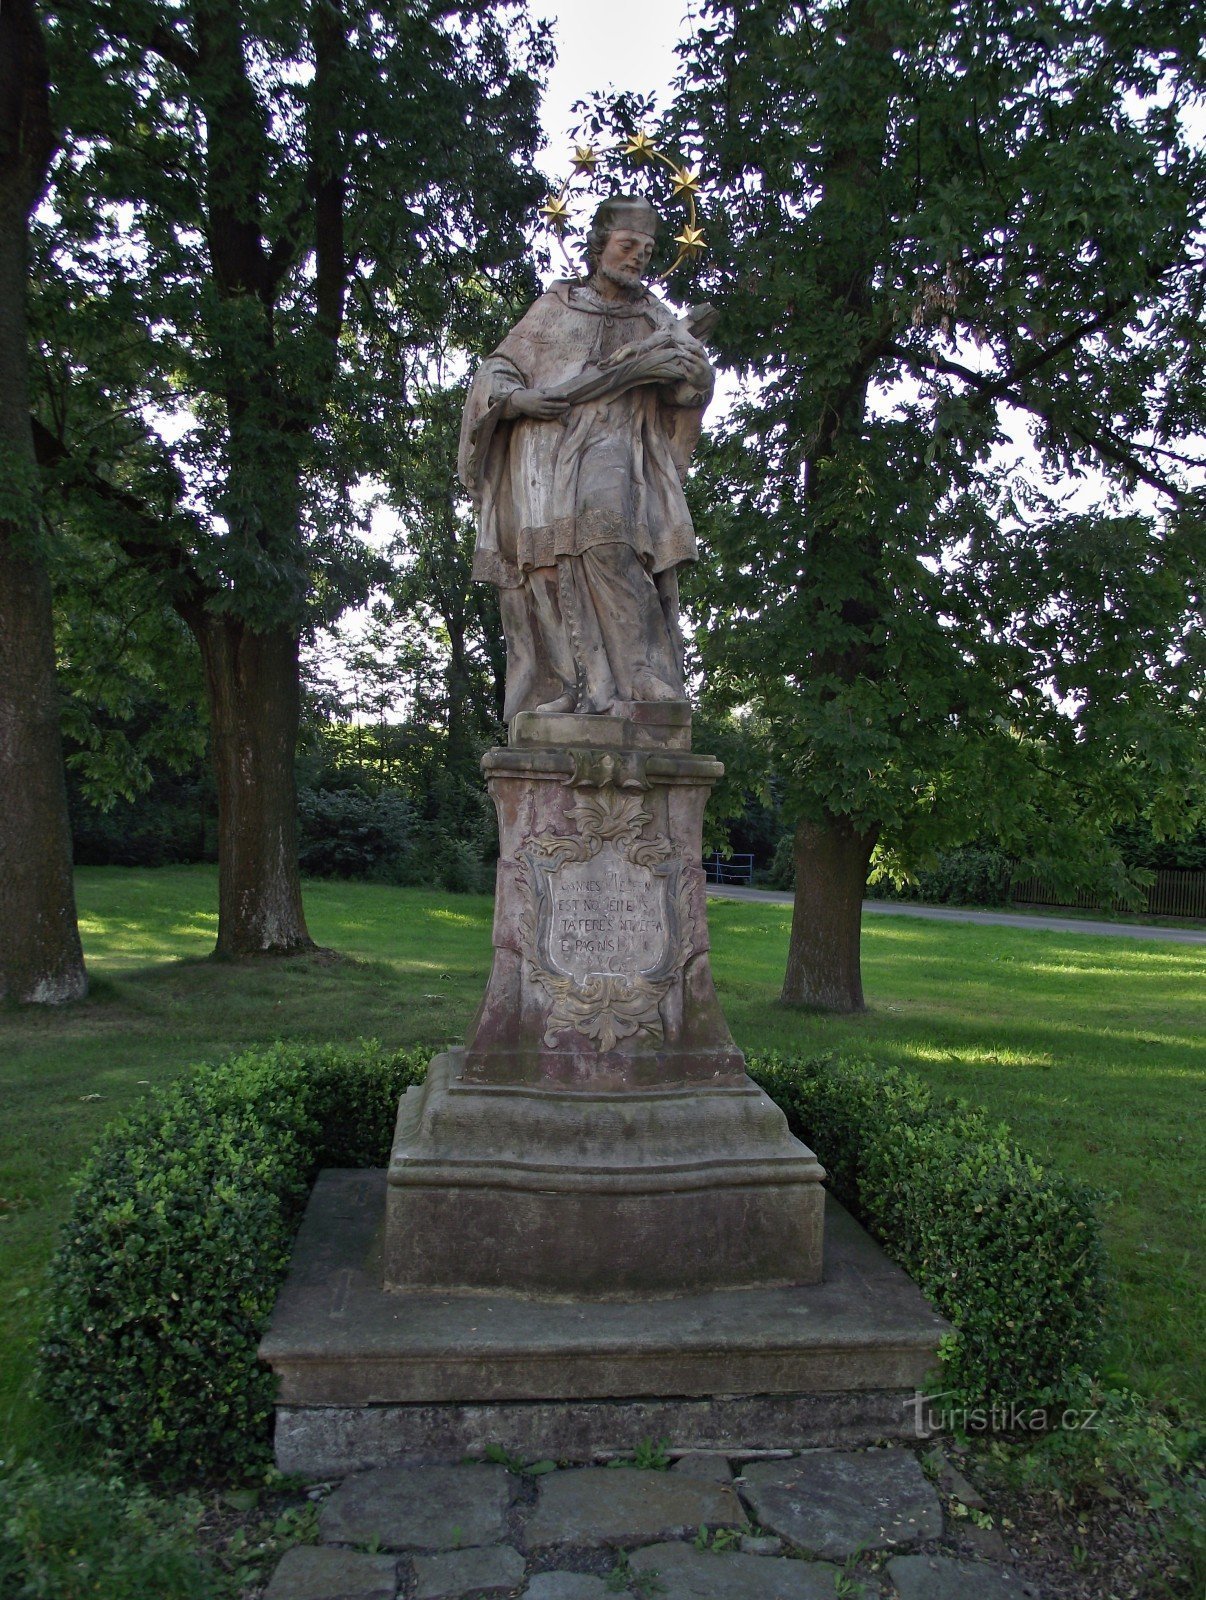 Rudná pod Pradědem - statue of St. Jan Nepomucký